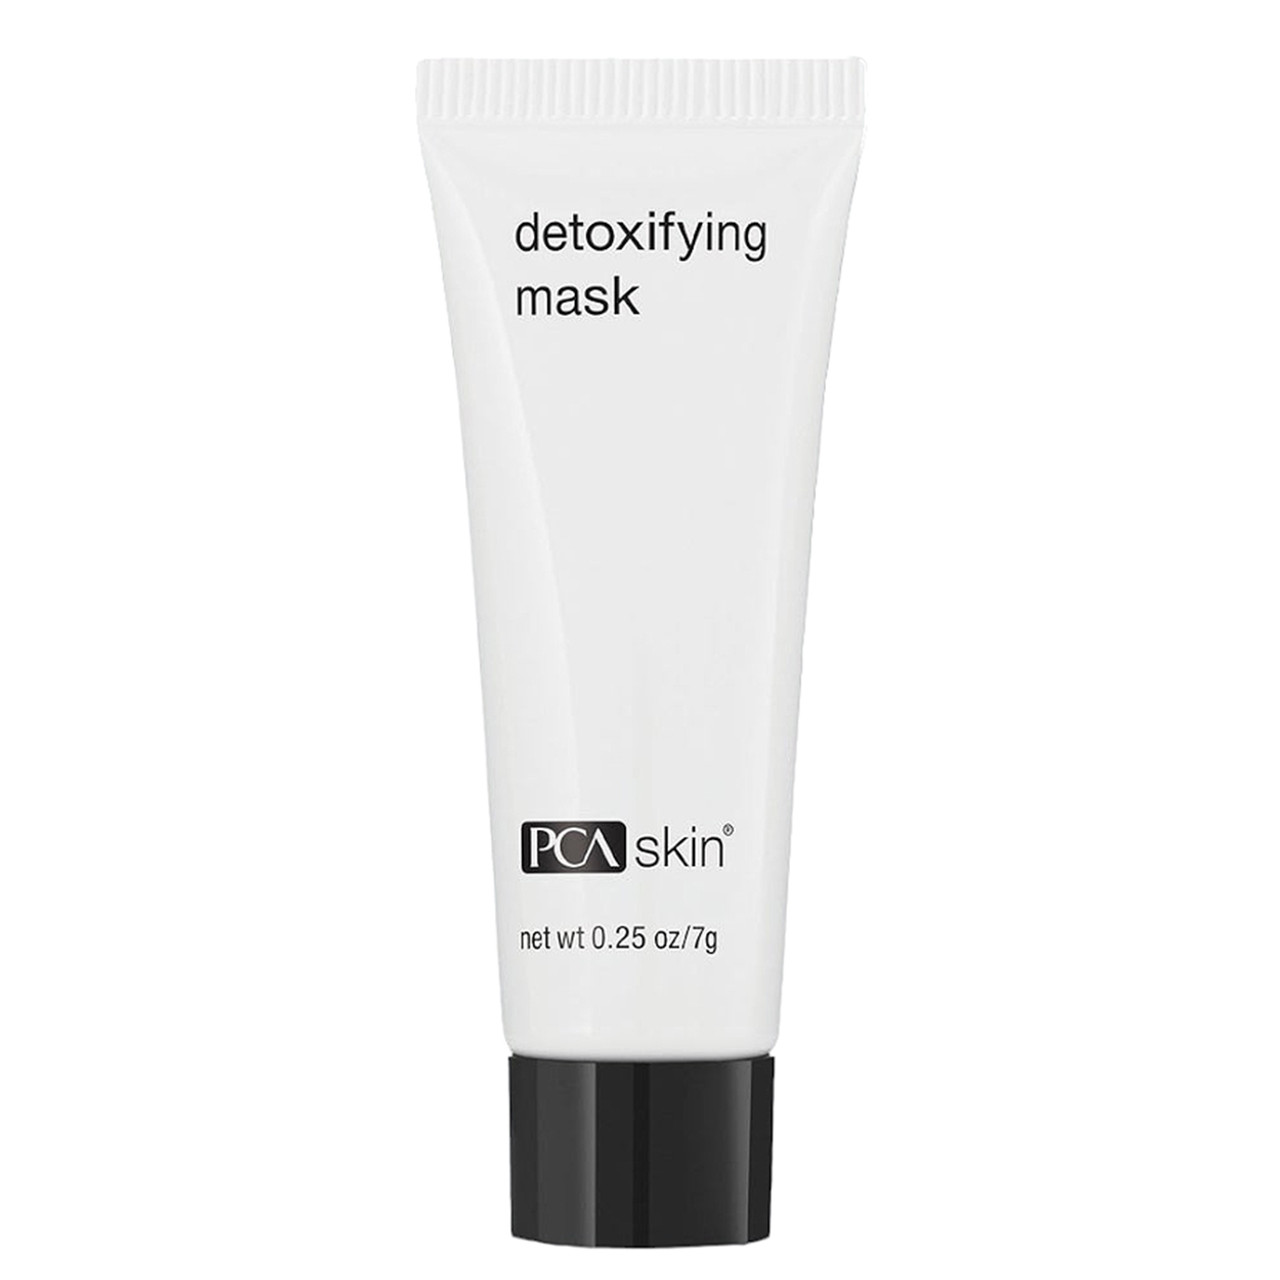 Detoxifying Mask Deluxe Travel Size - 0.25 oz